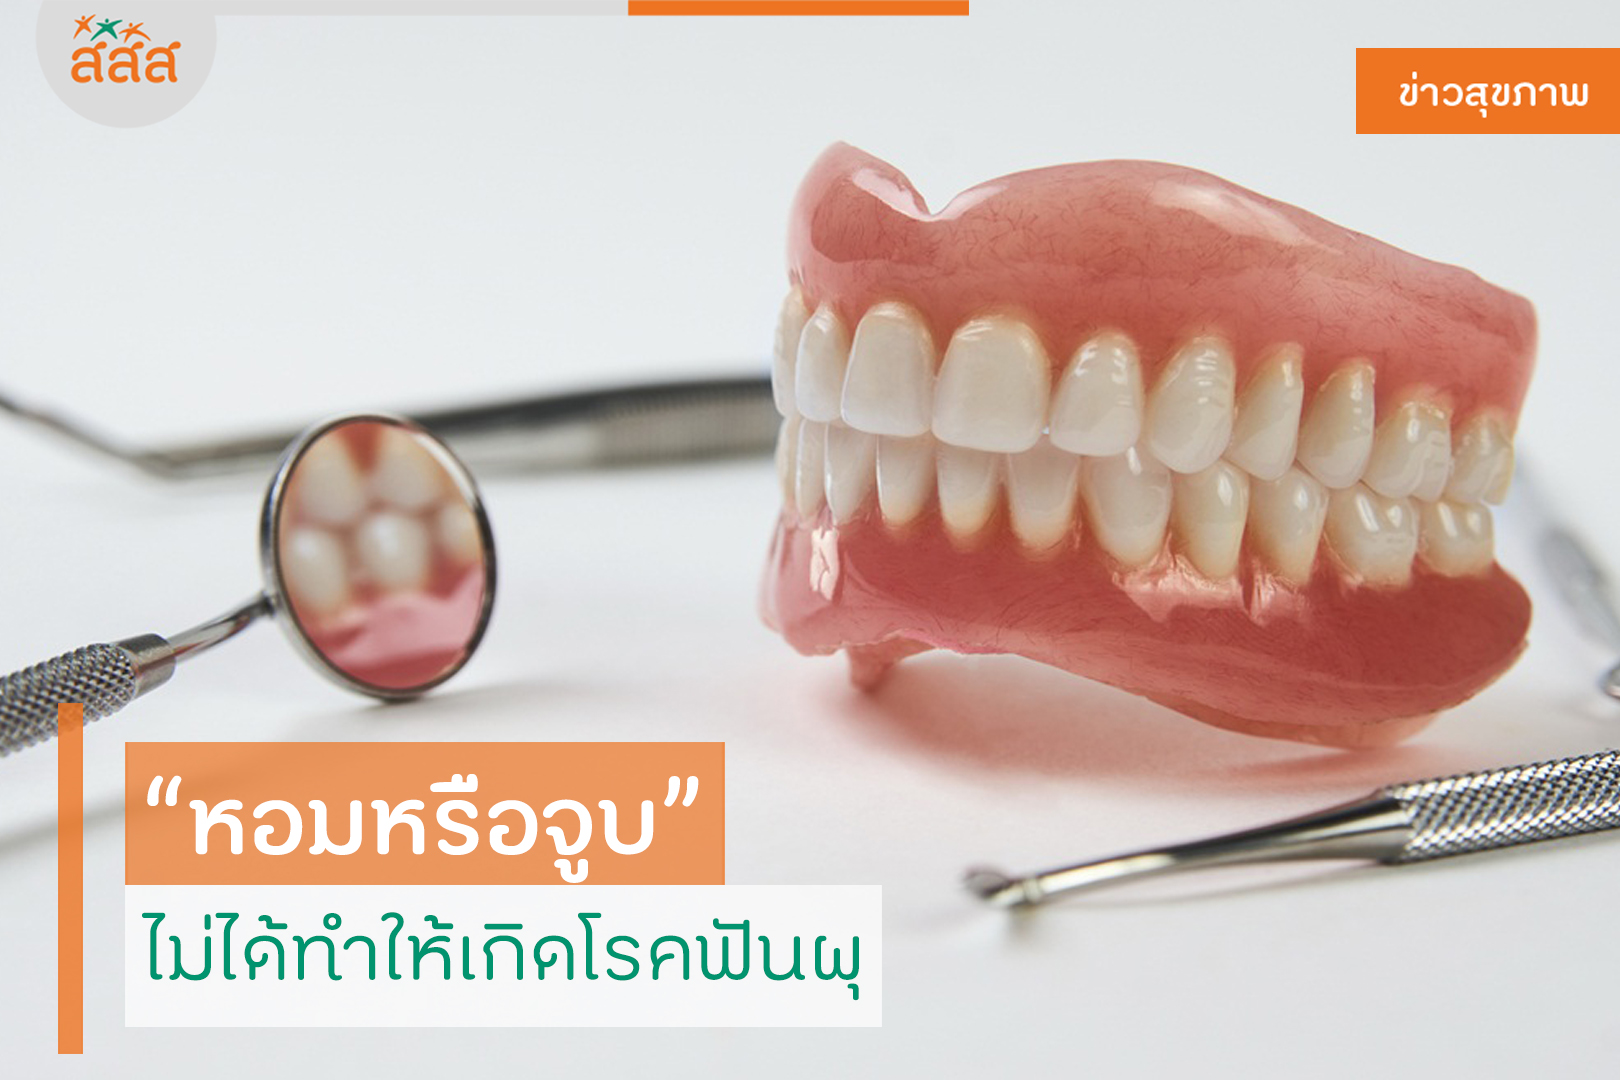 หอมหรือจูบ ไม่ได้ทำให้เกิดโรคฟันผุ thaihealth